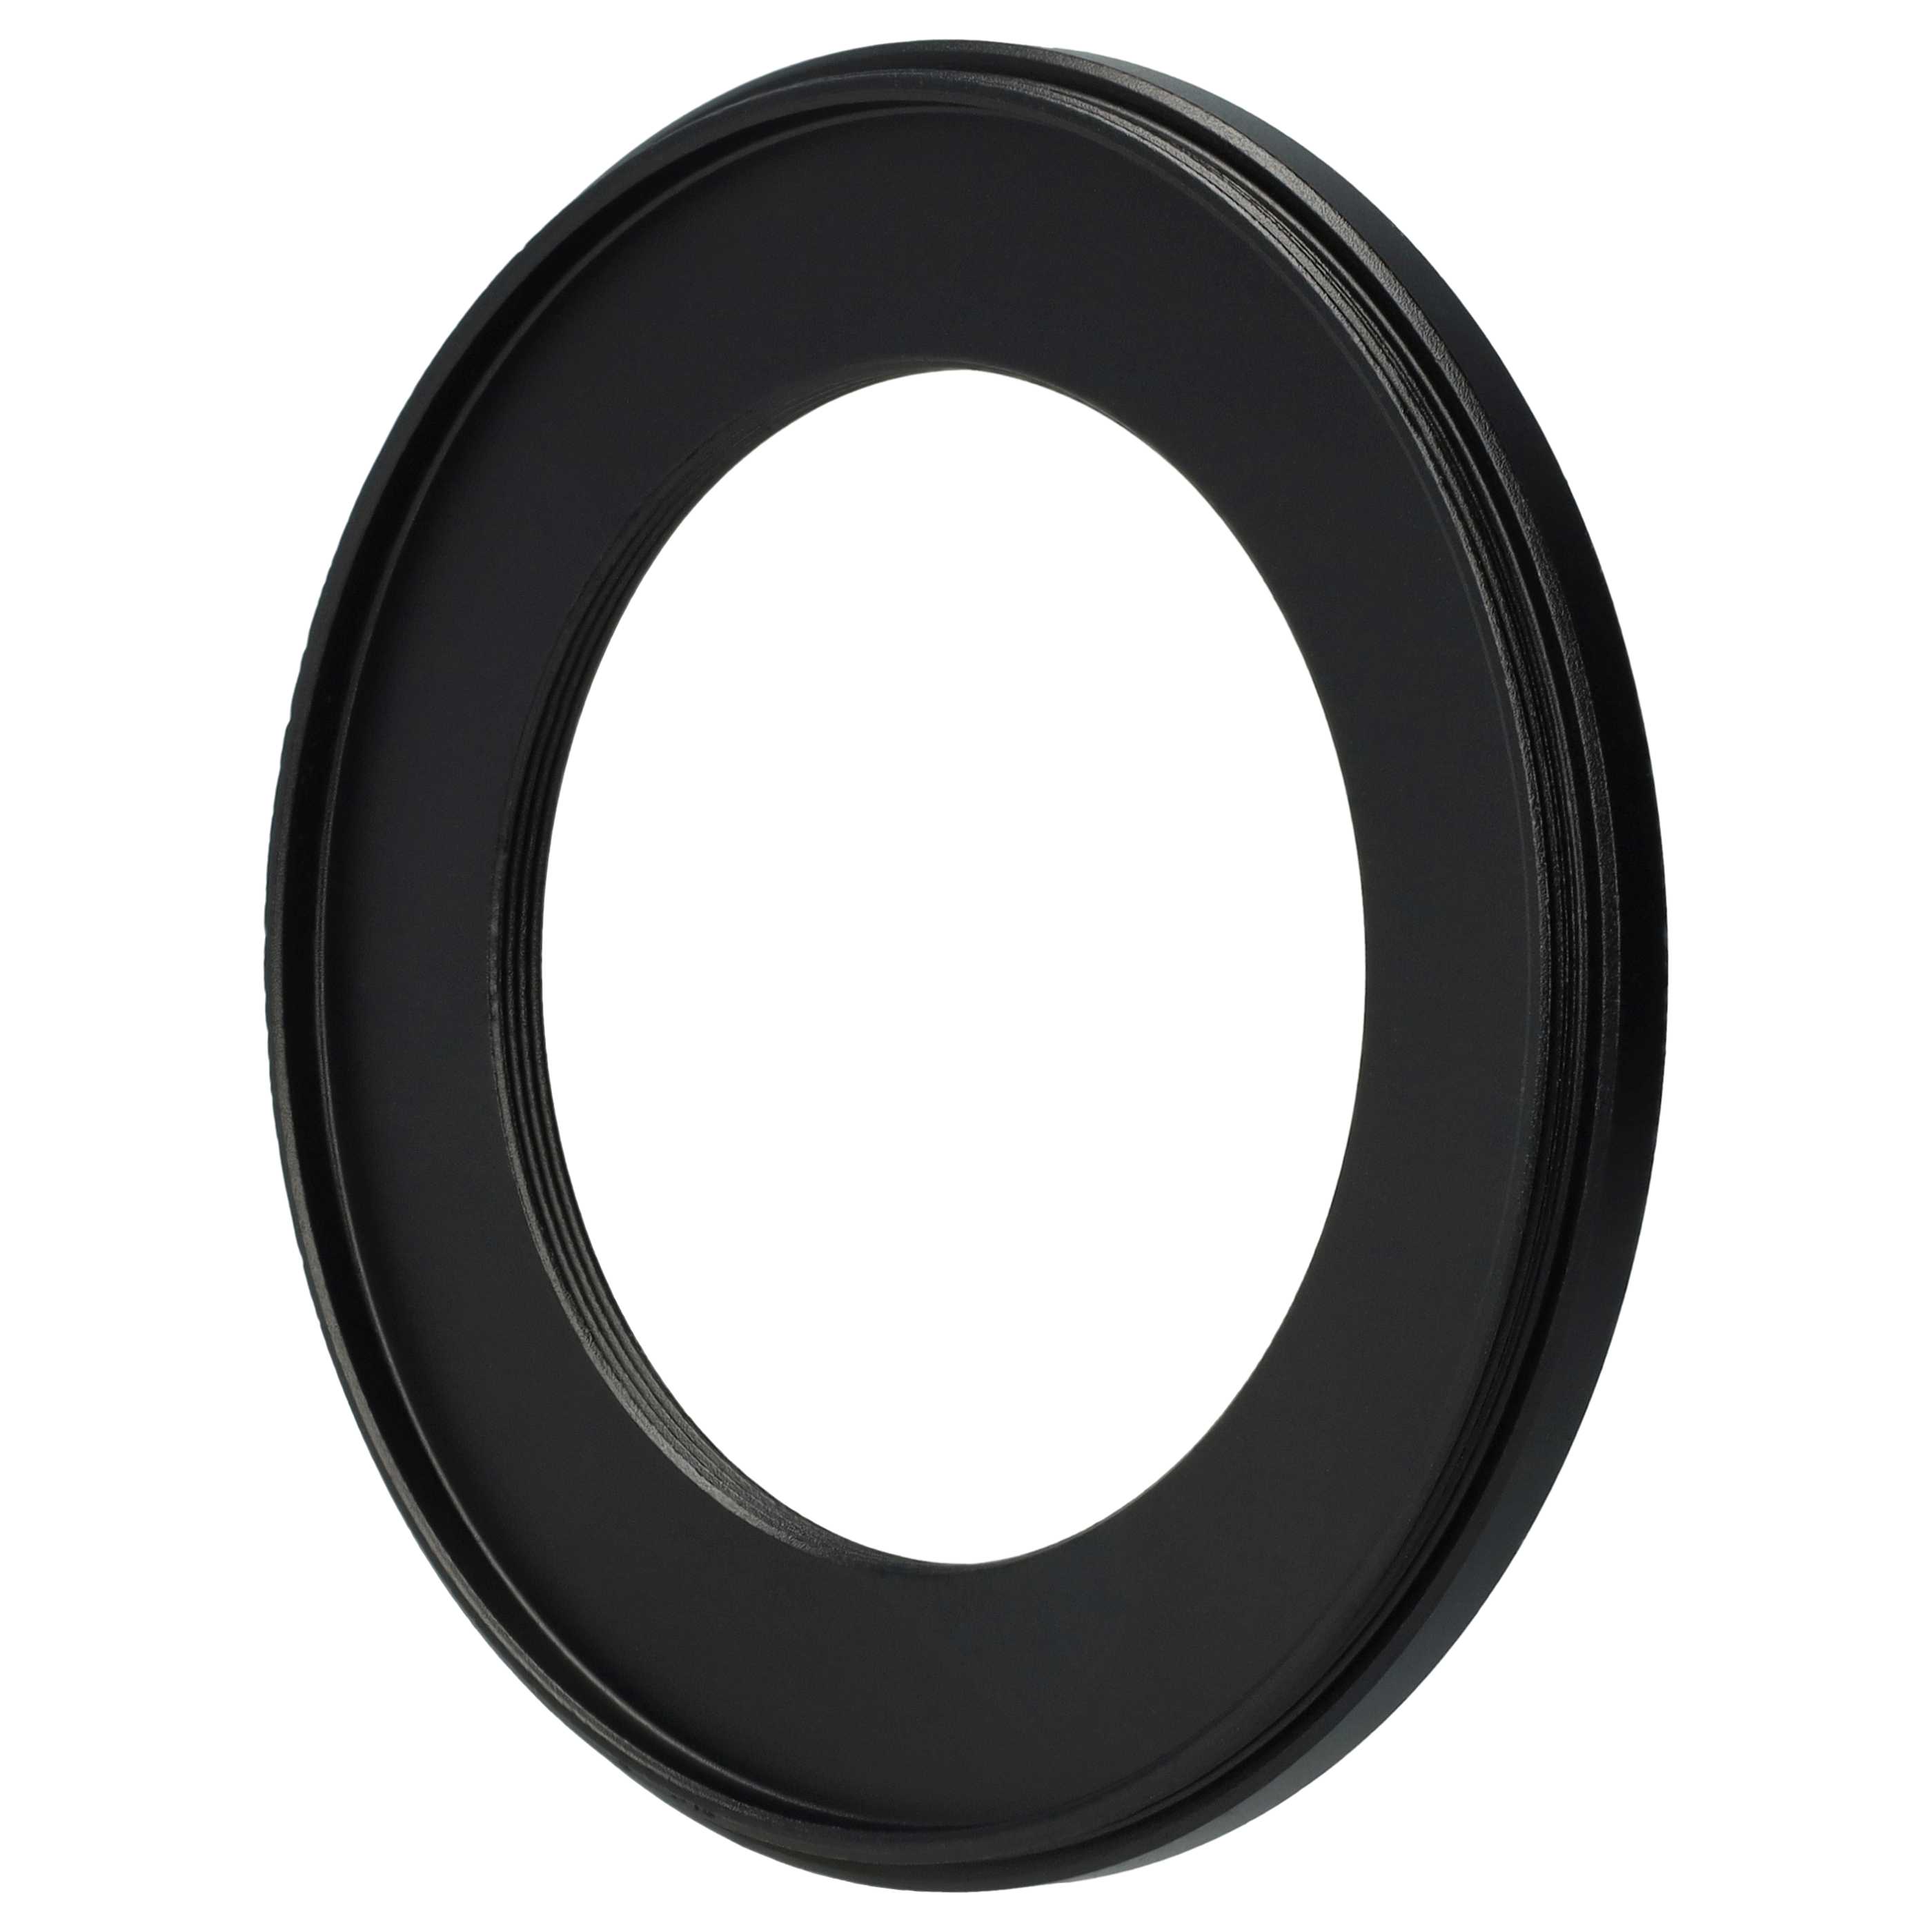 Anello adattatore step-down da 77 mm a 52 mm per obiettivo fotocamera - Adattatore filtro, metallo, nero